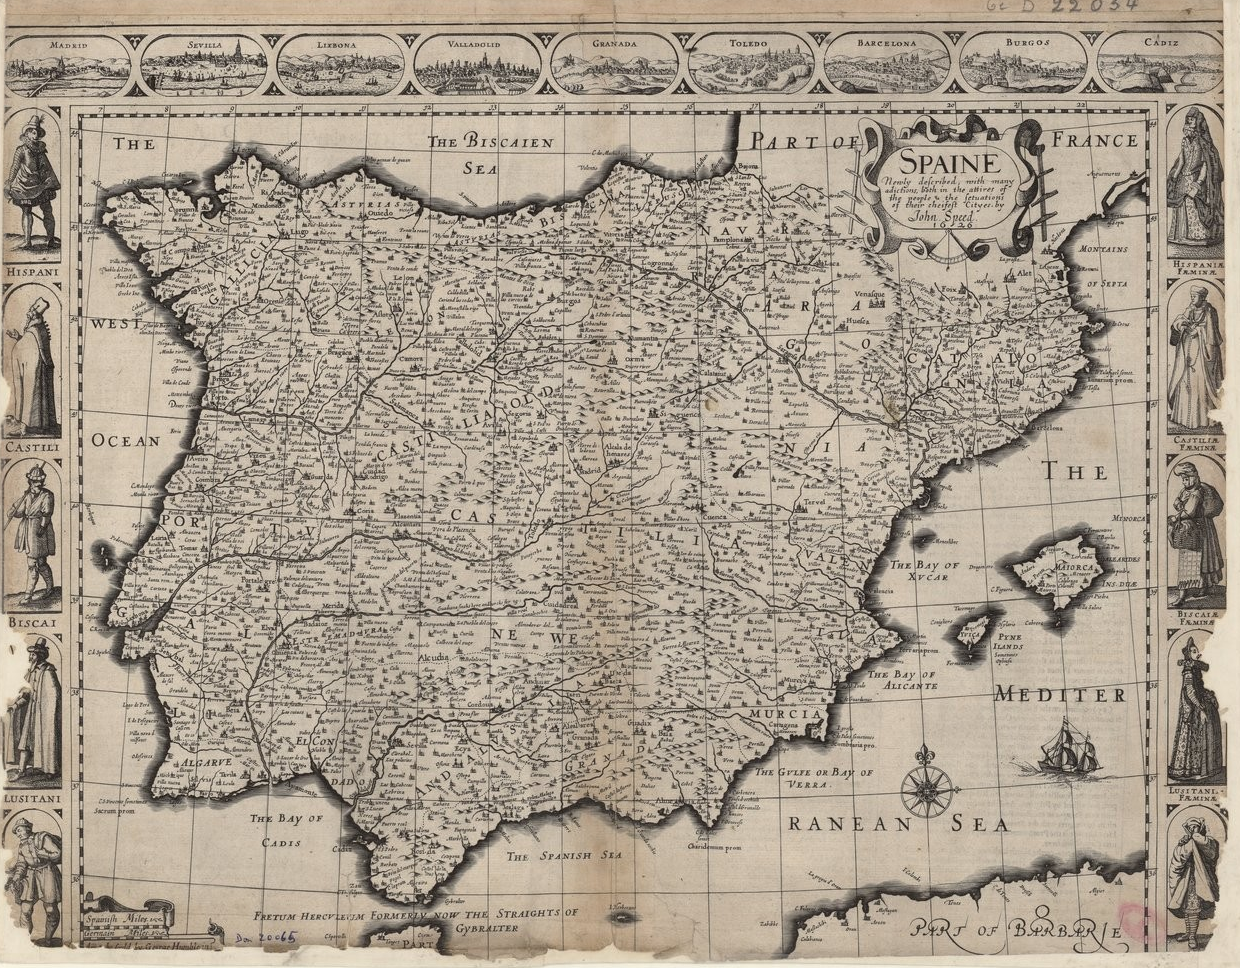 Mapa inglés de los dominios penínsulars de la monarquía hispánica (1626). Fuente Bibliothèque Nationale de France